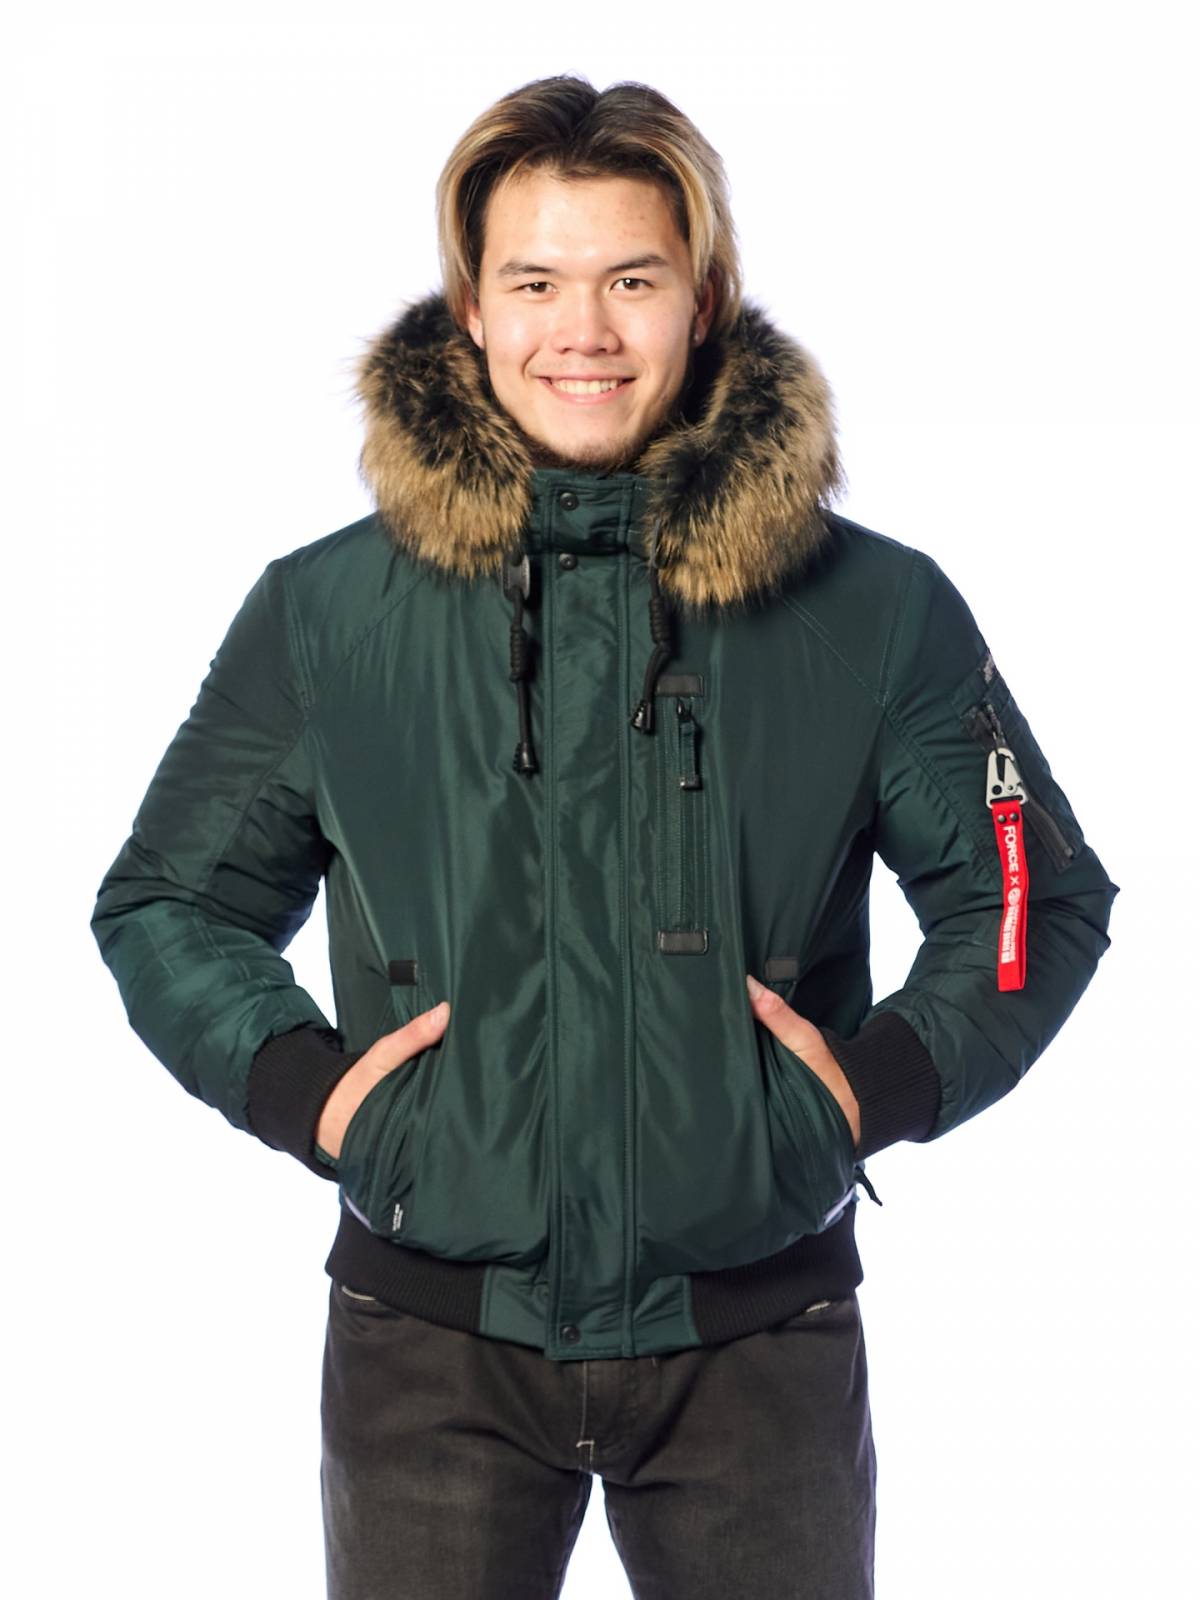 Зимняя куртка мужская Shark Force 4184 зеленая 48 RU